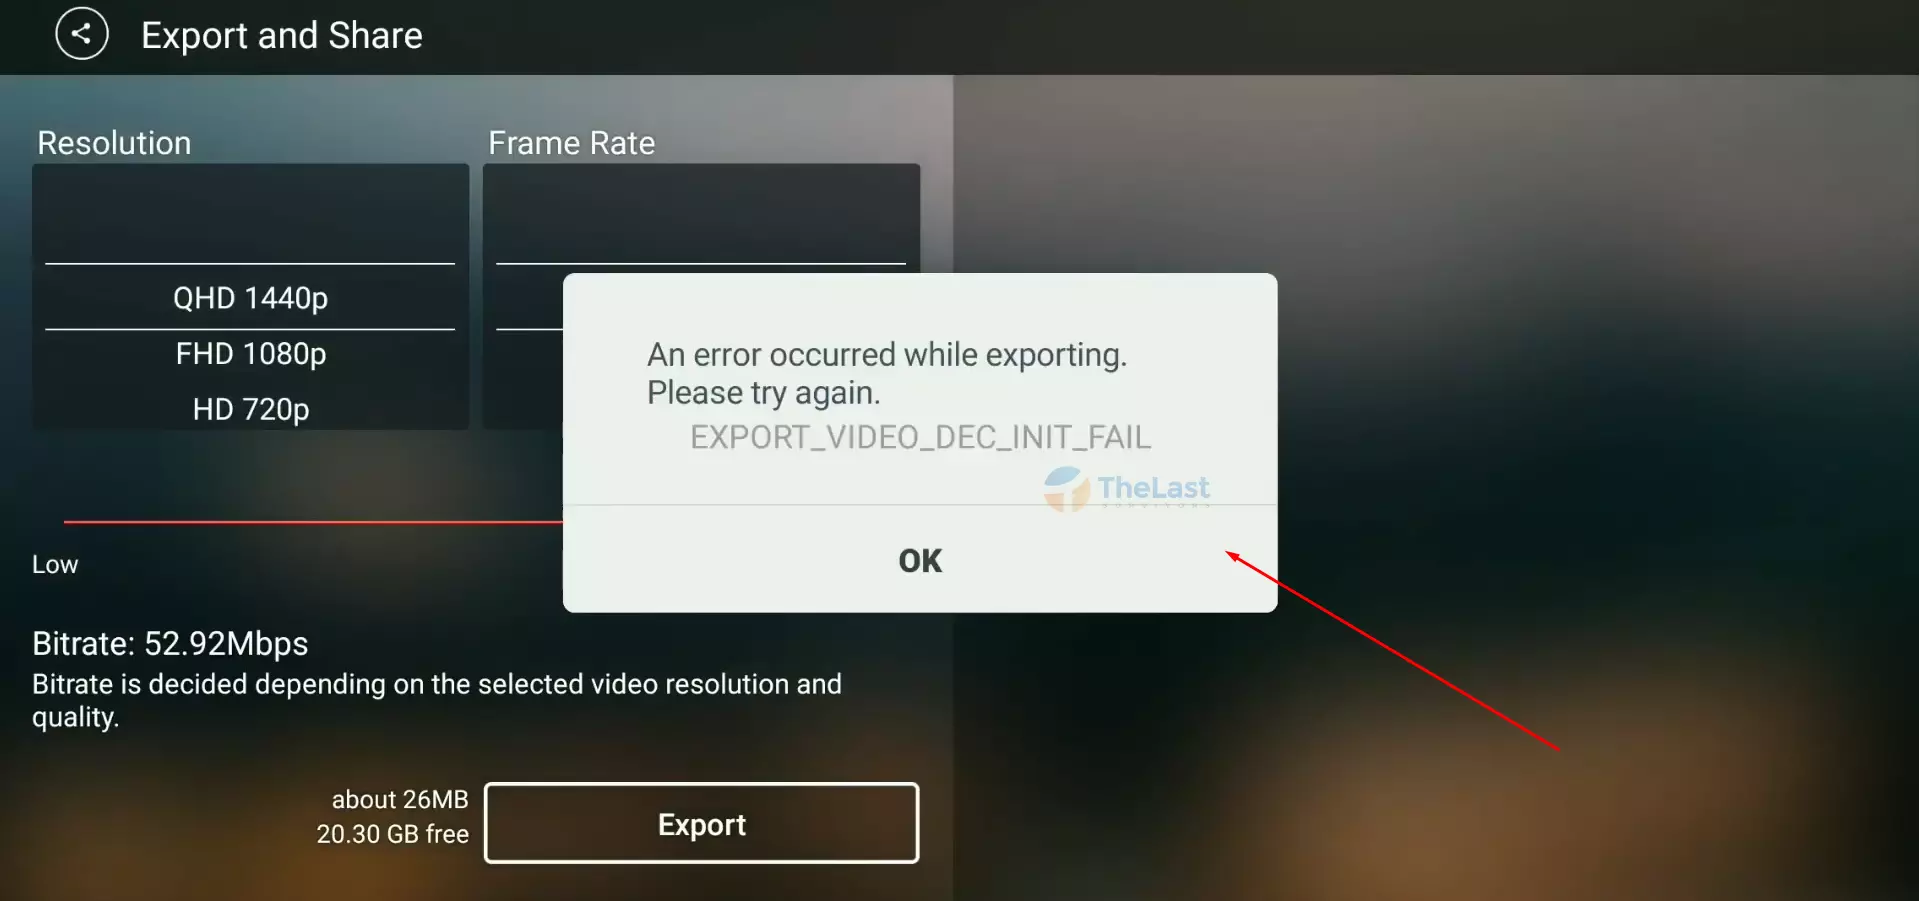 Penyebab Error Export Video Dec Init Fail